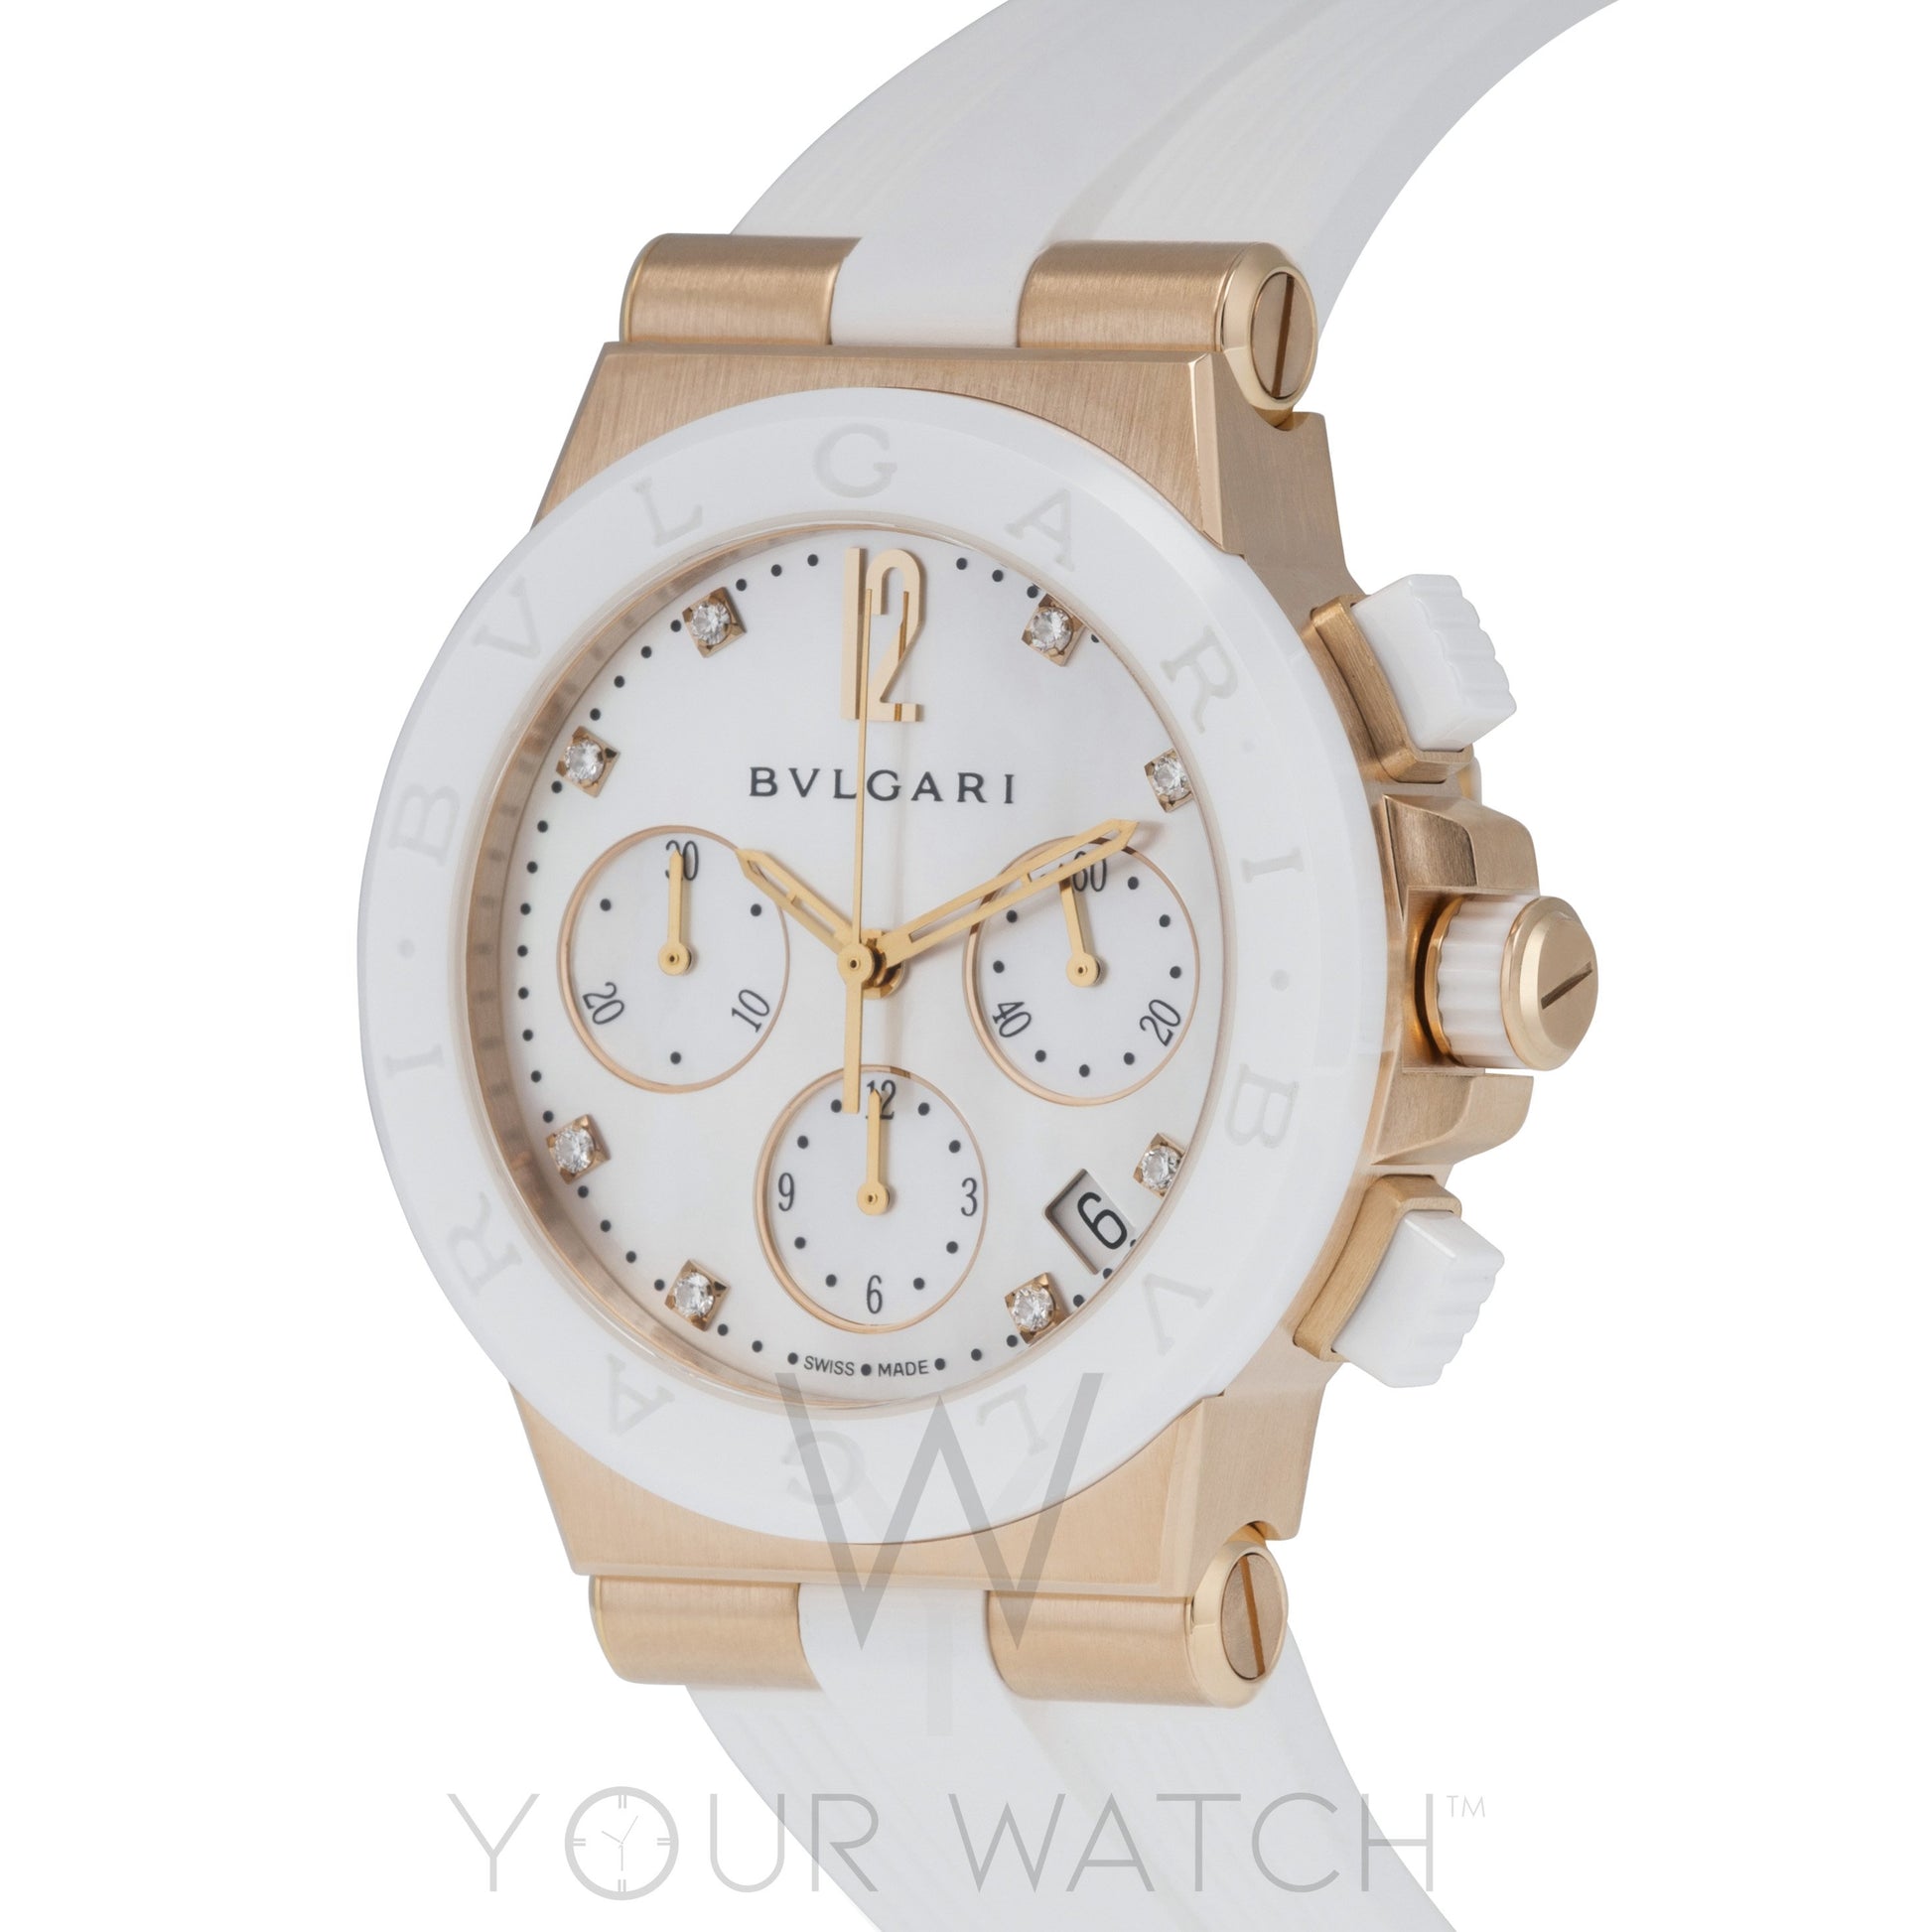 Bvlgari Diagono 18 Carat Pink Gold Chronograph Ladies Watch 101994